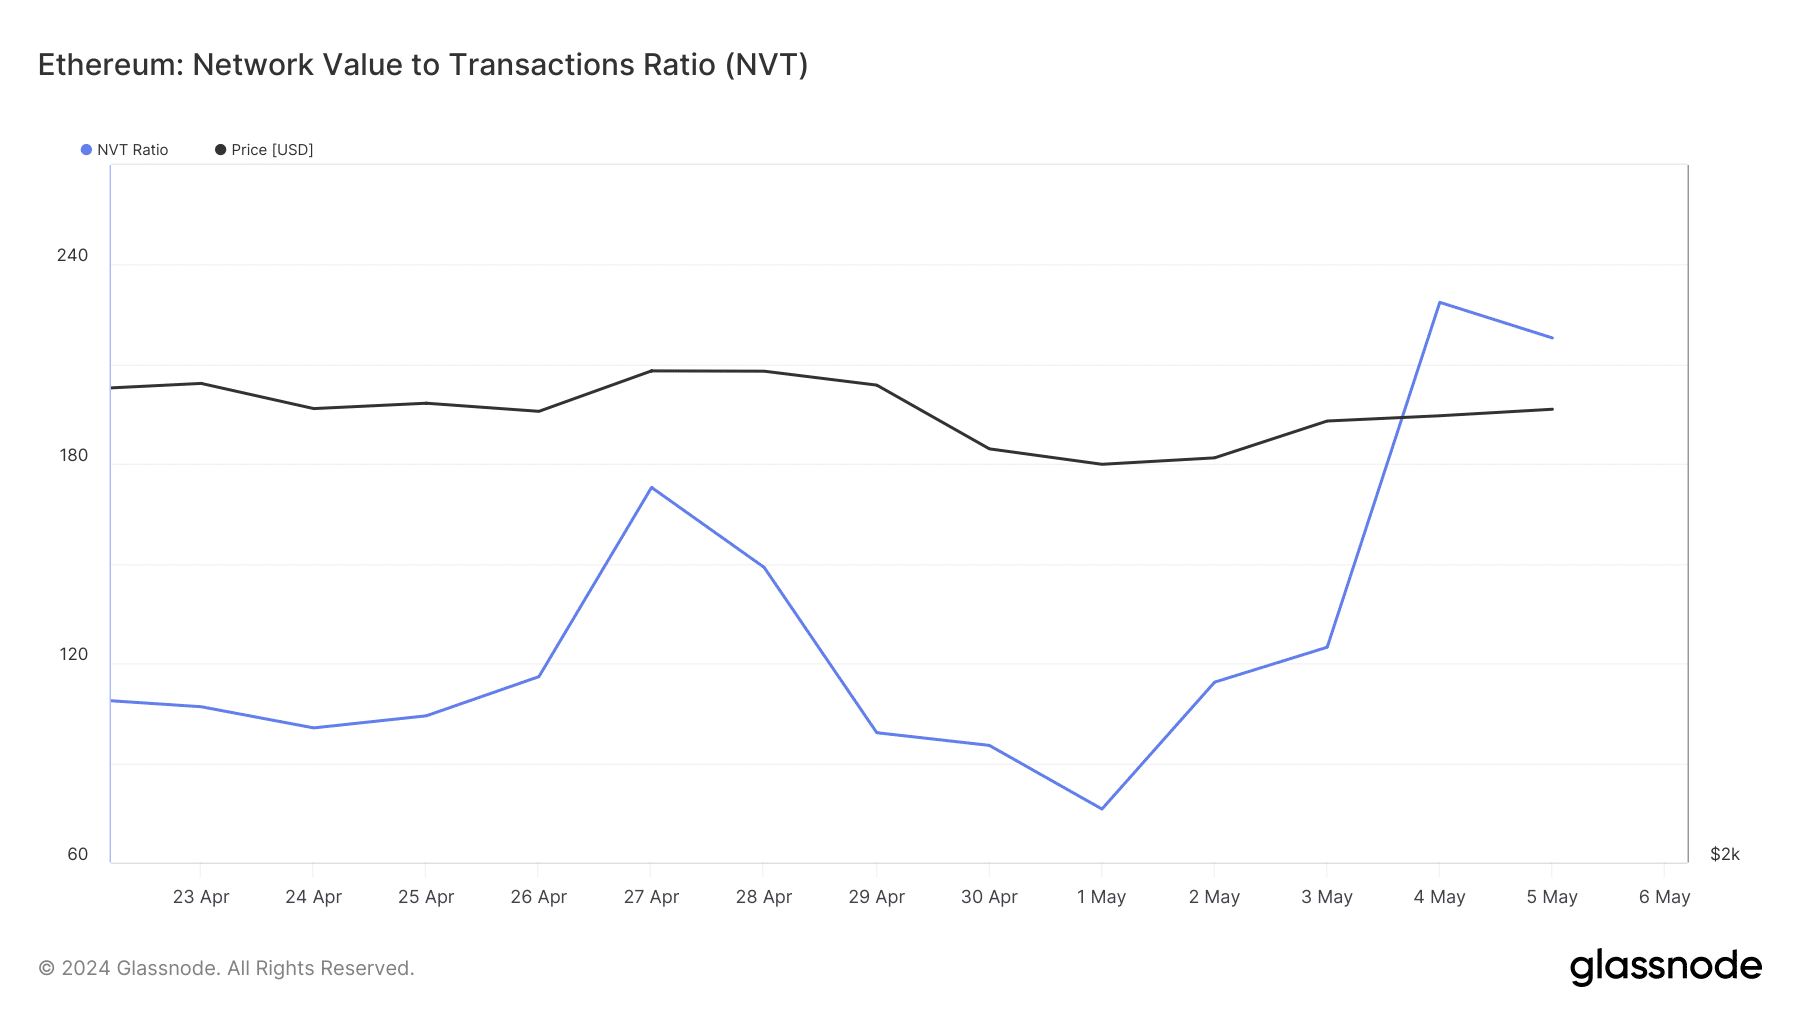 Ethereum's NVT Ratio dropped